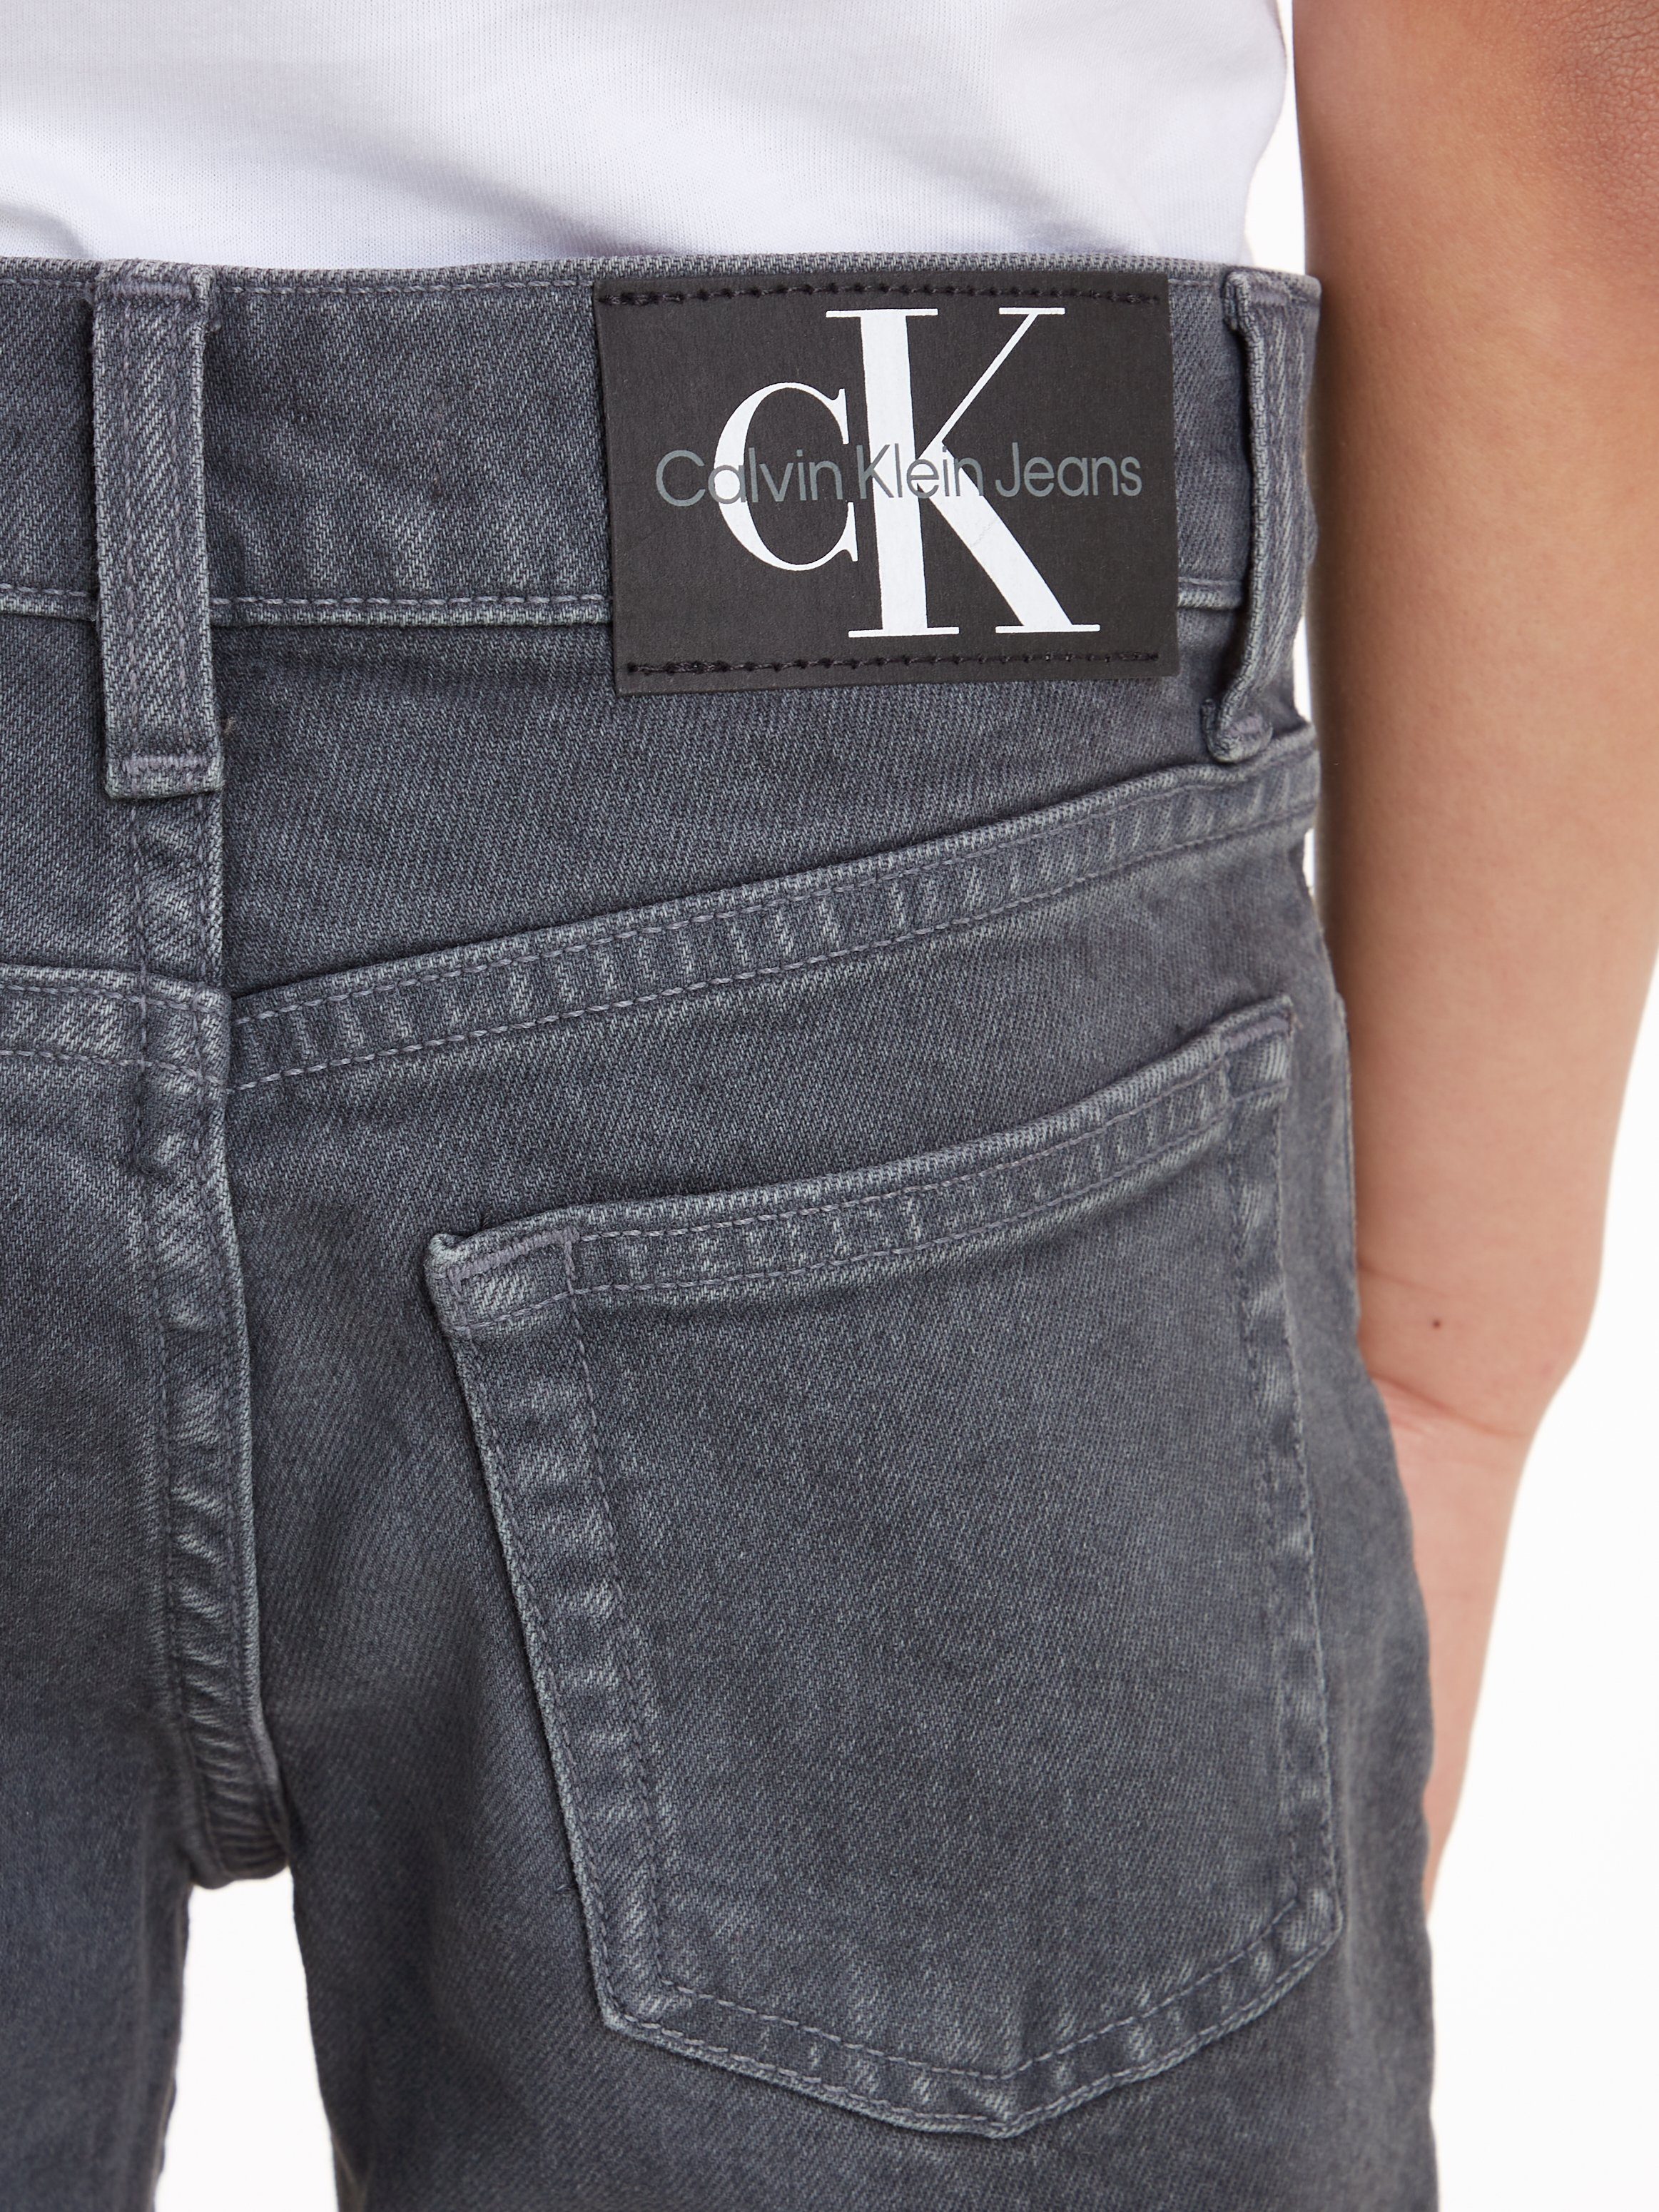 Klein Stretch-Jeans OVERDYED GREY DAD Jeans DARK Calvin